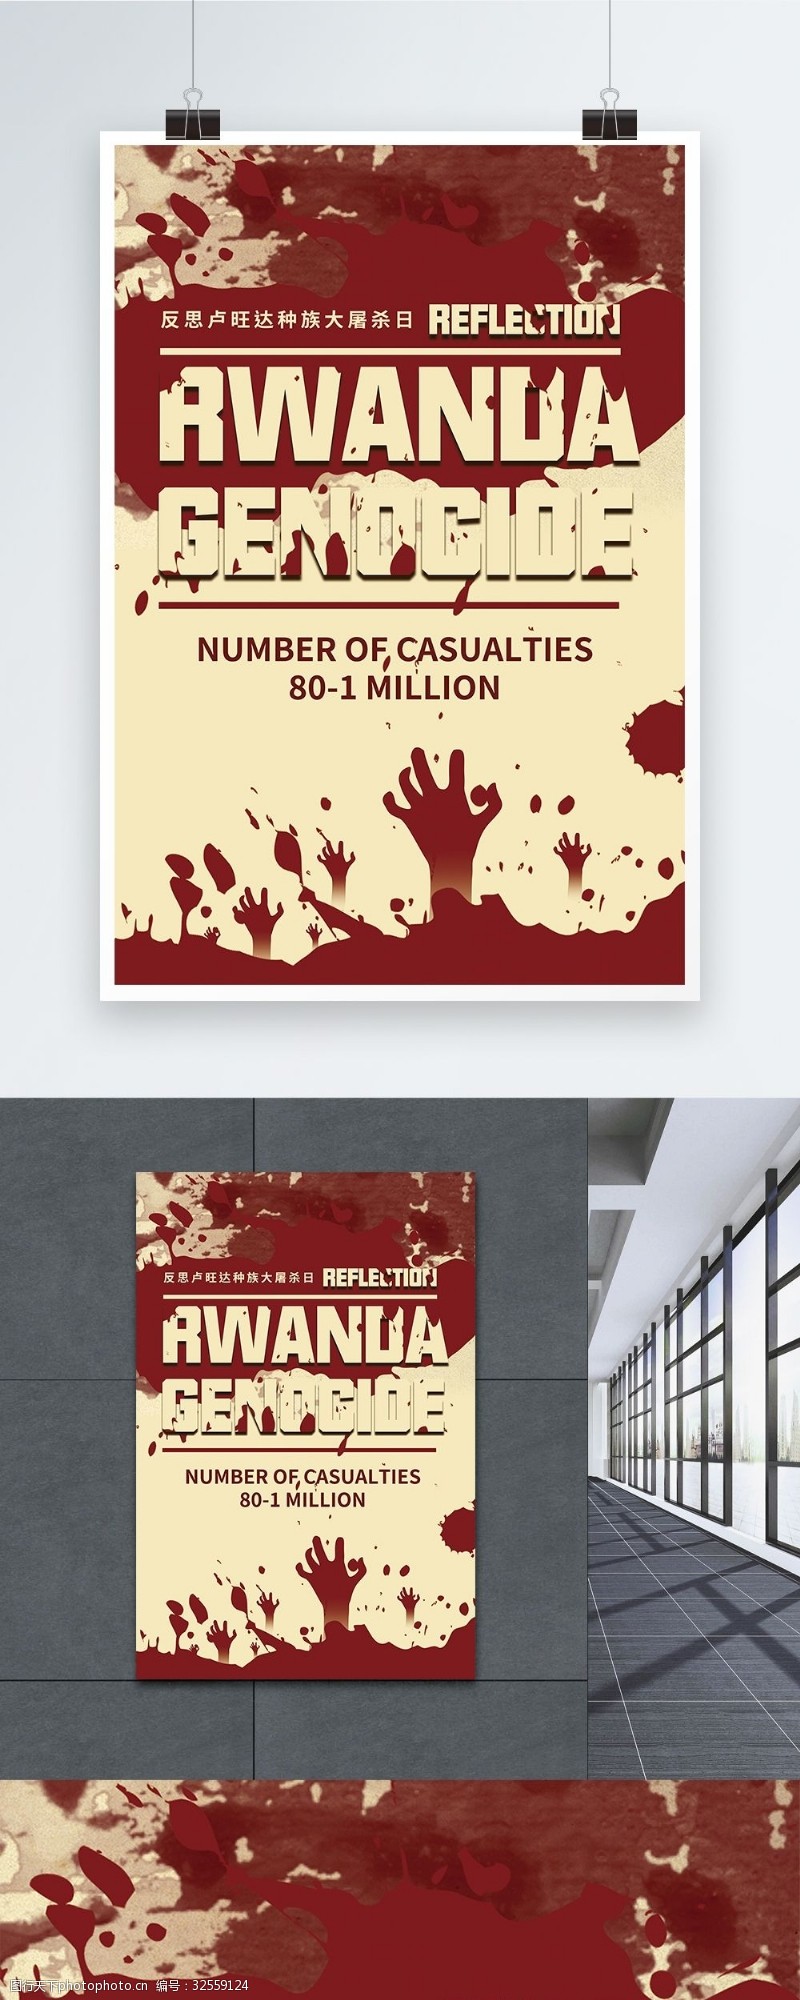 灭绝反思卢旺达大屠杀国际日英文海报